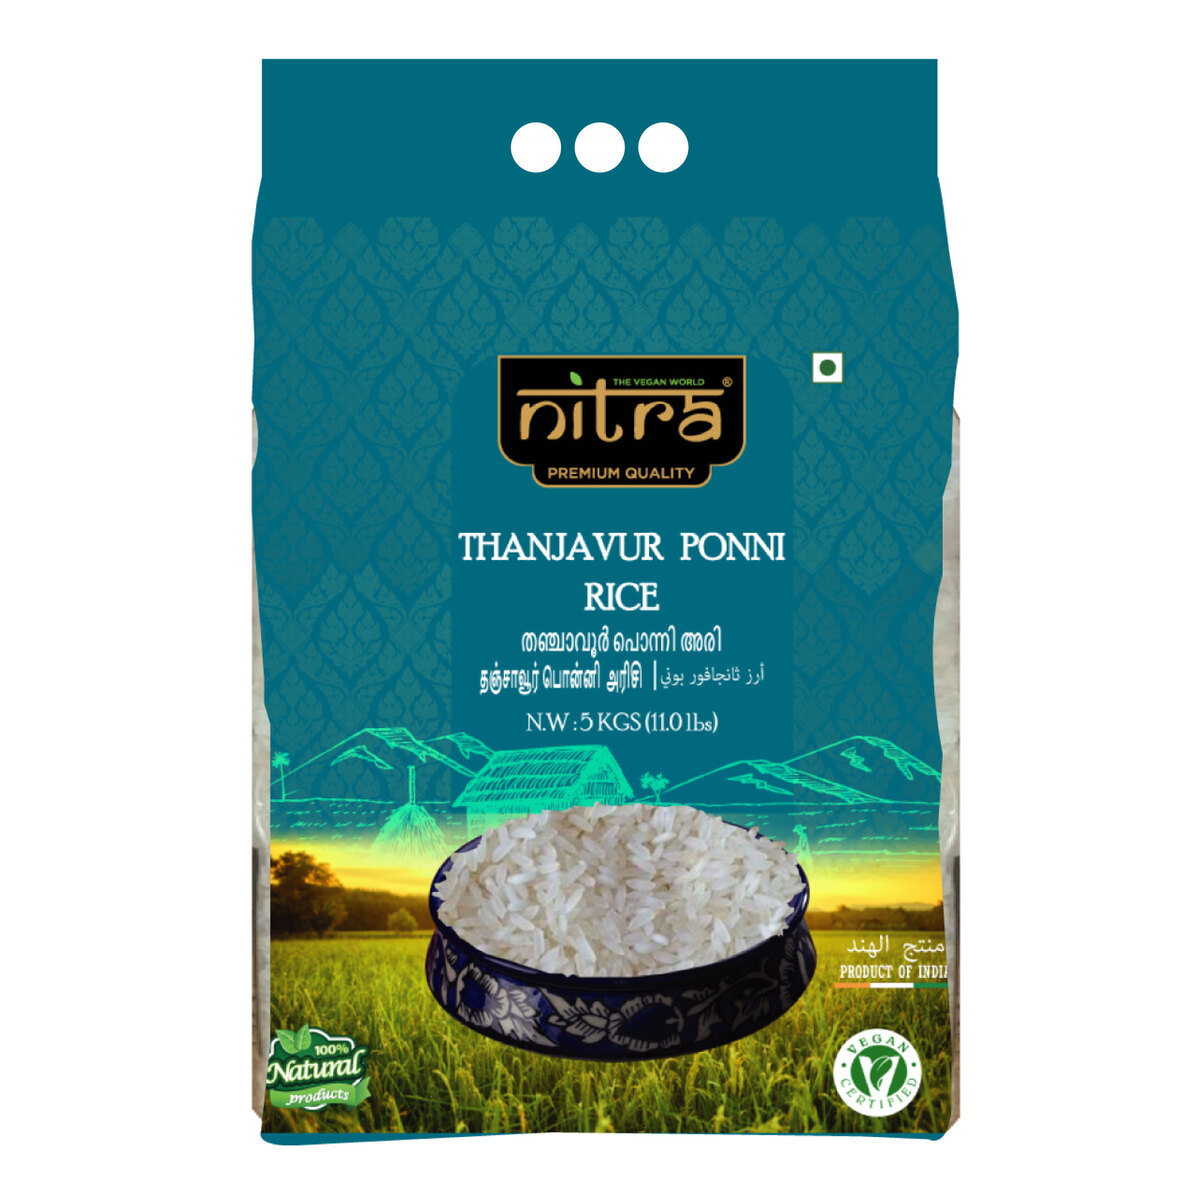 Nitra Thanjavur Ponni Rice, 5 kg